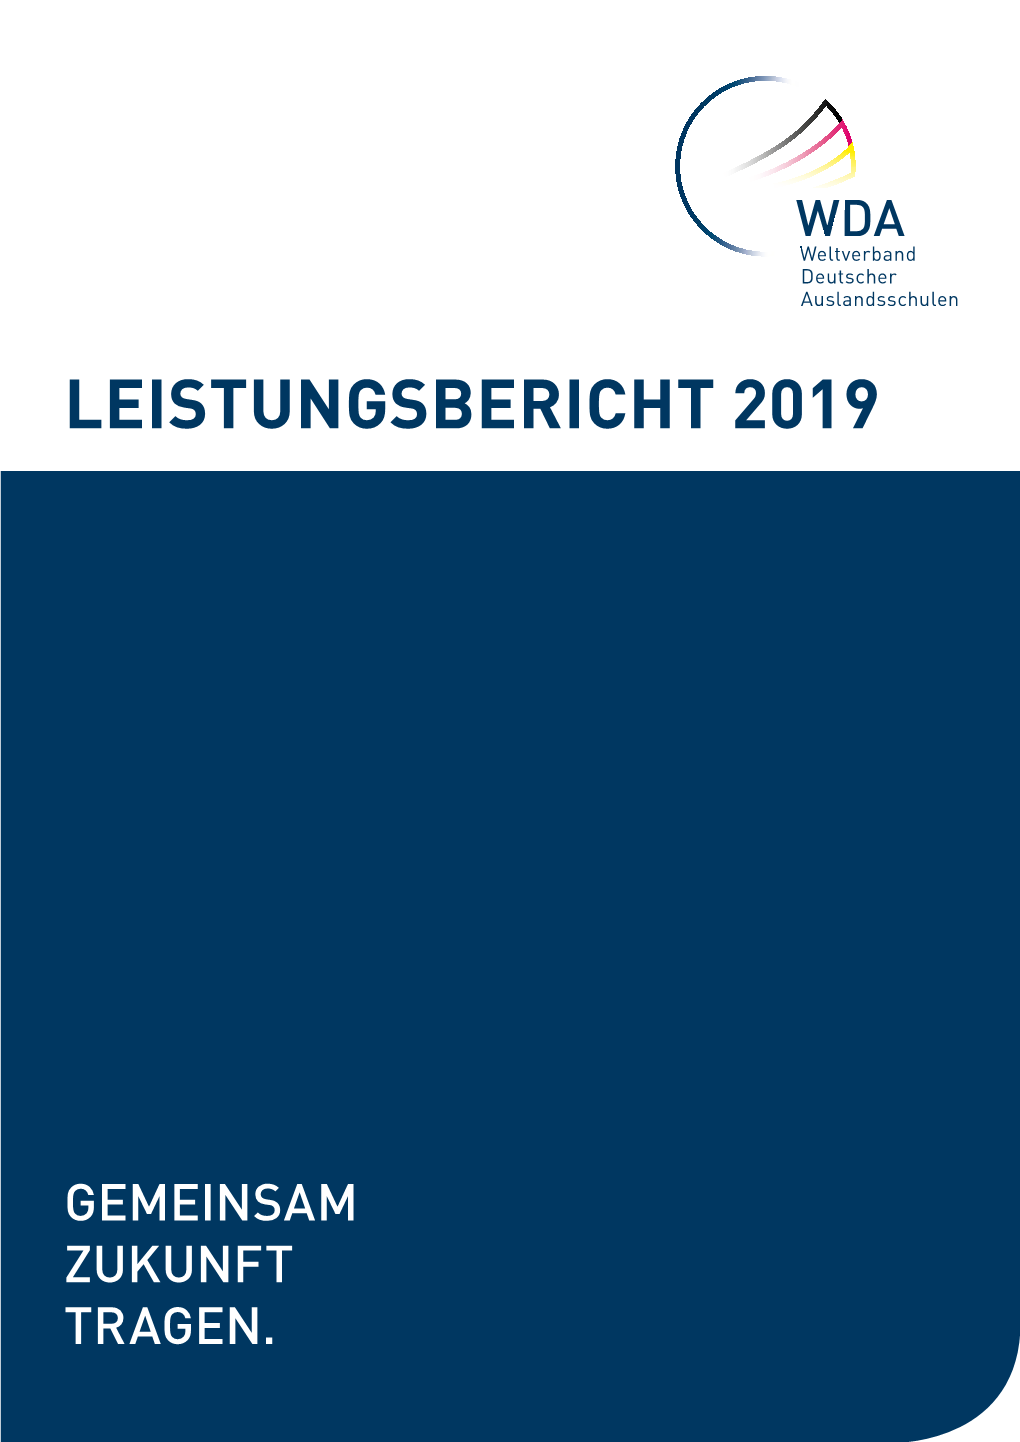 WDA-Leistungsbericht 2019